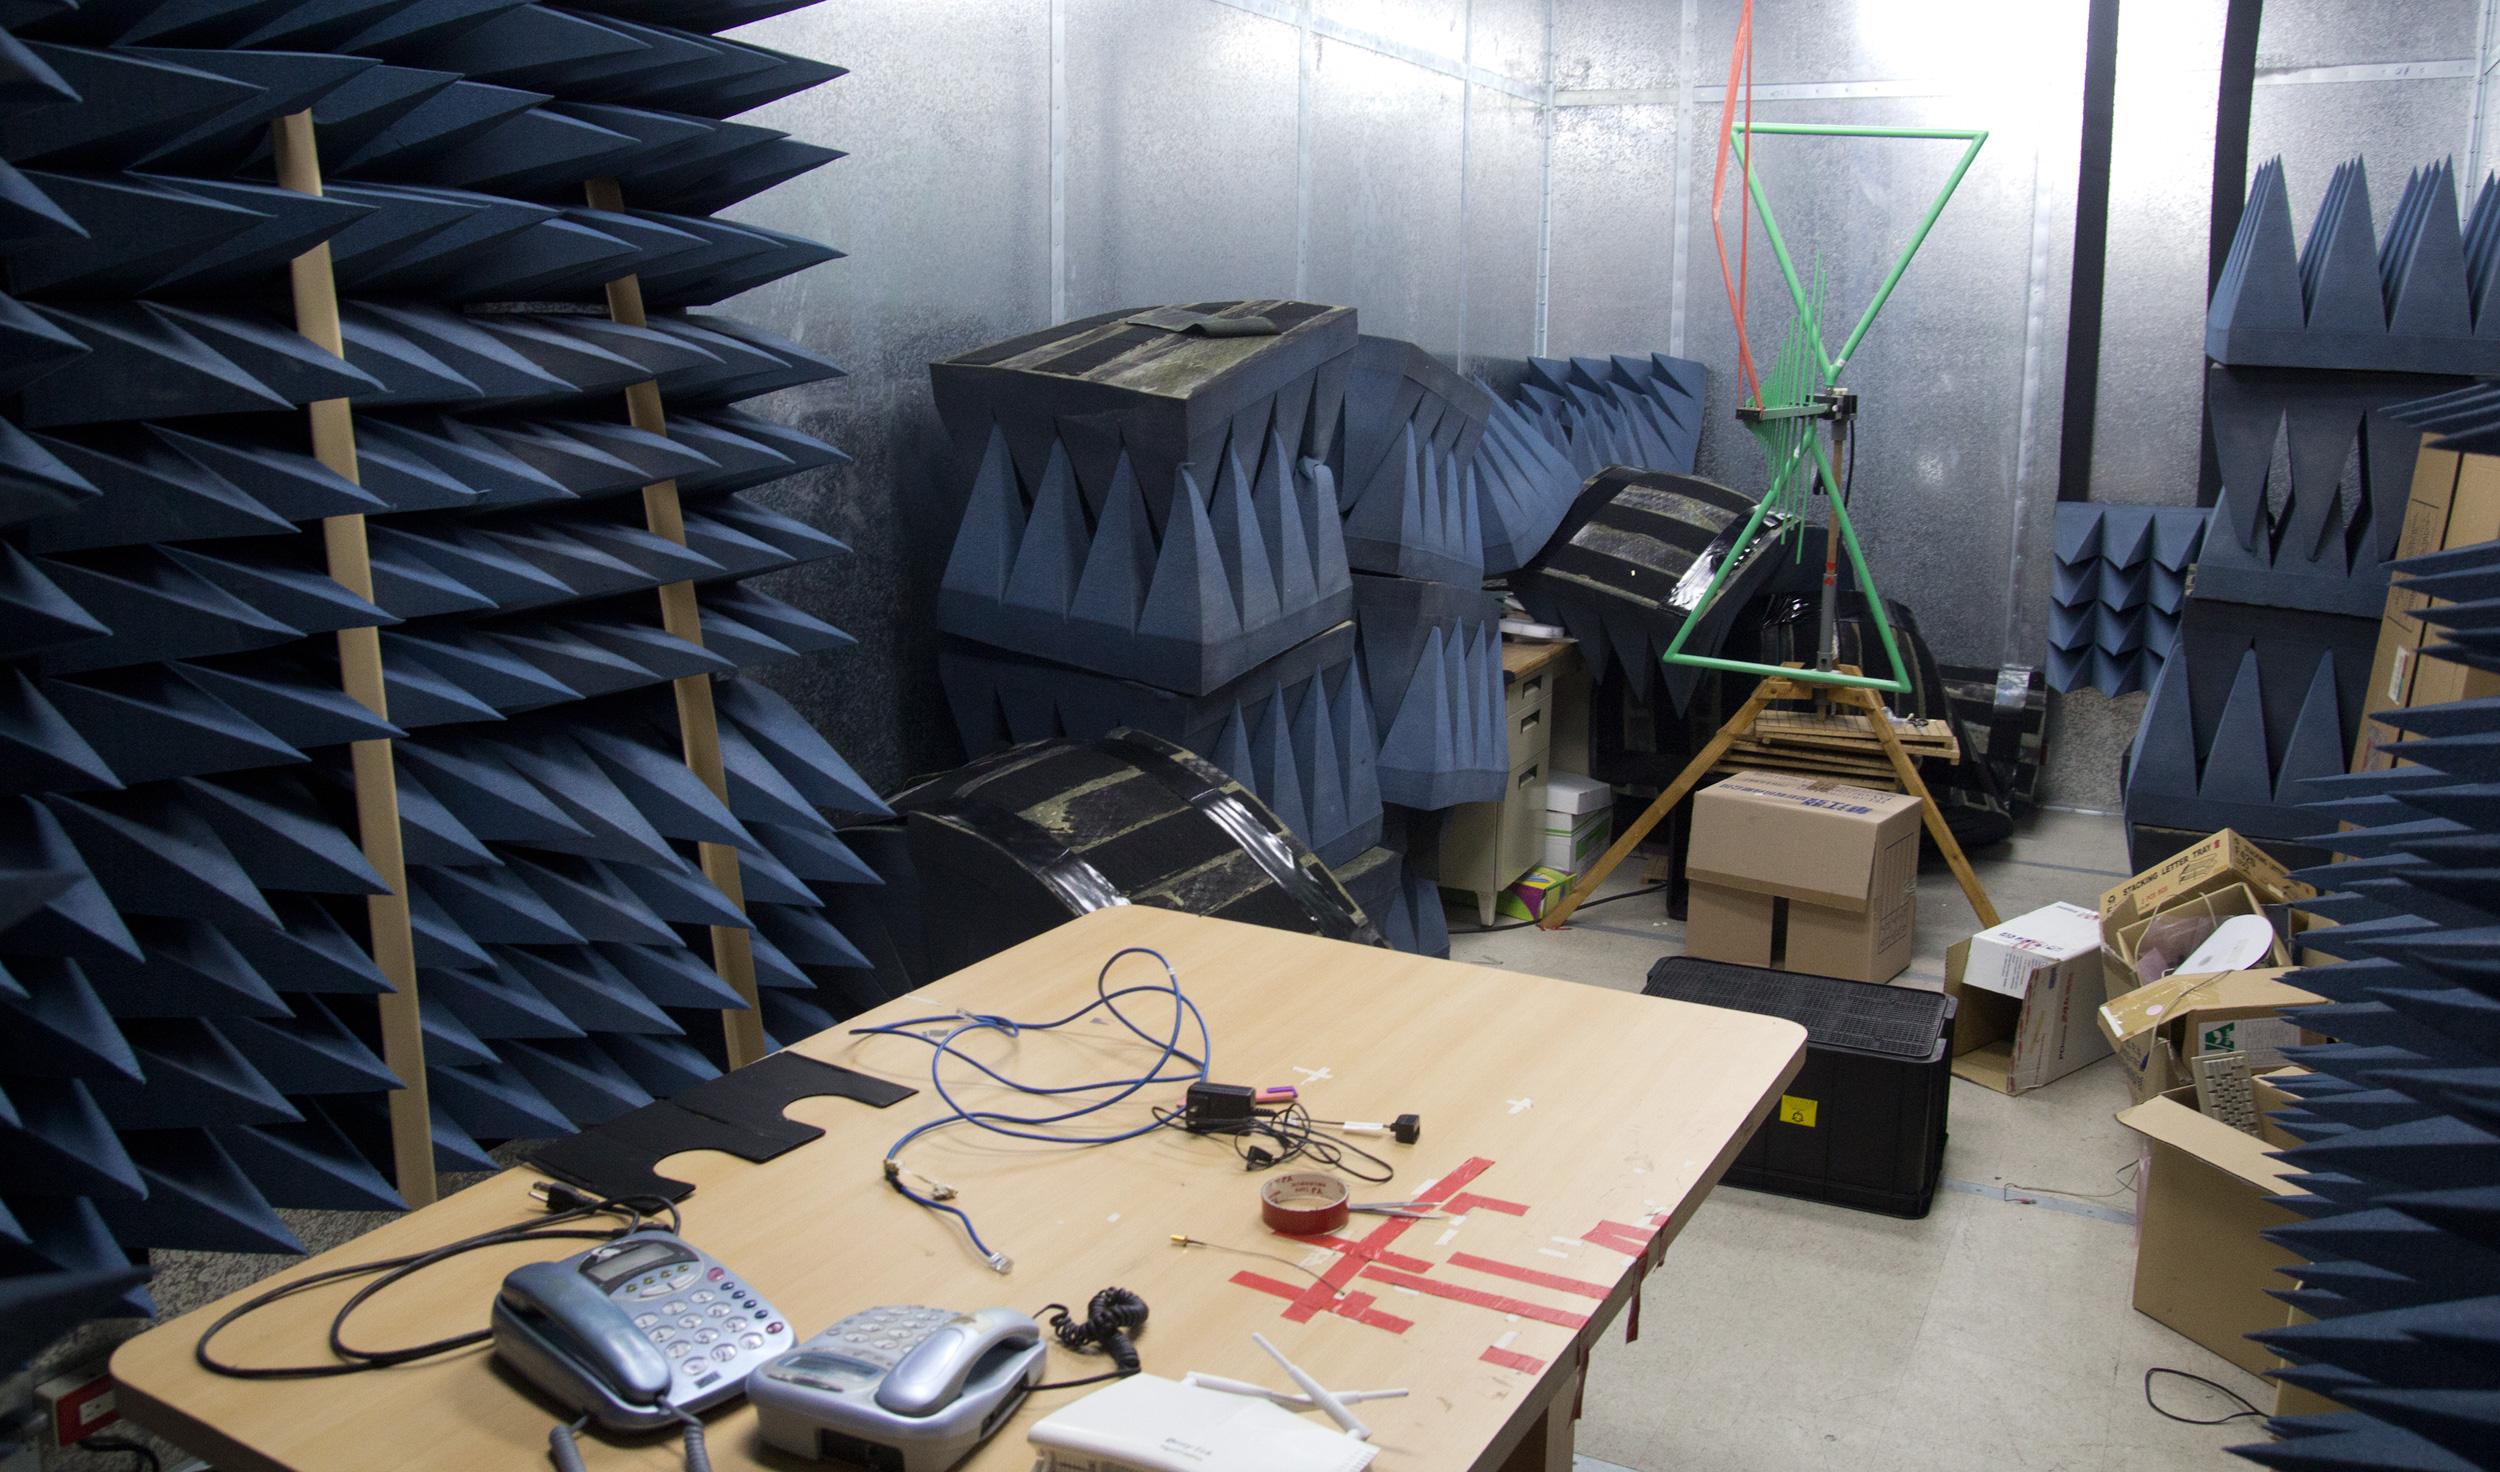 Dette rommet brukes til å teste trådløse signaler. Hele rommet er kapslet inn, og skal være helt uforstyrret.Foto: Rolf B. Wegner, Hardware.no